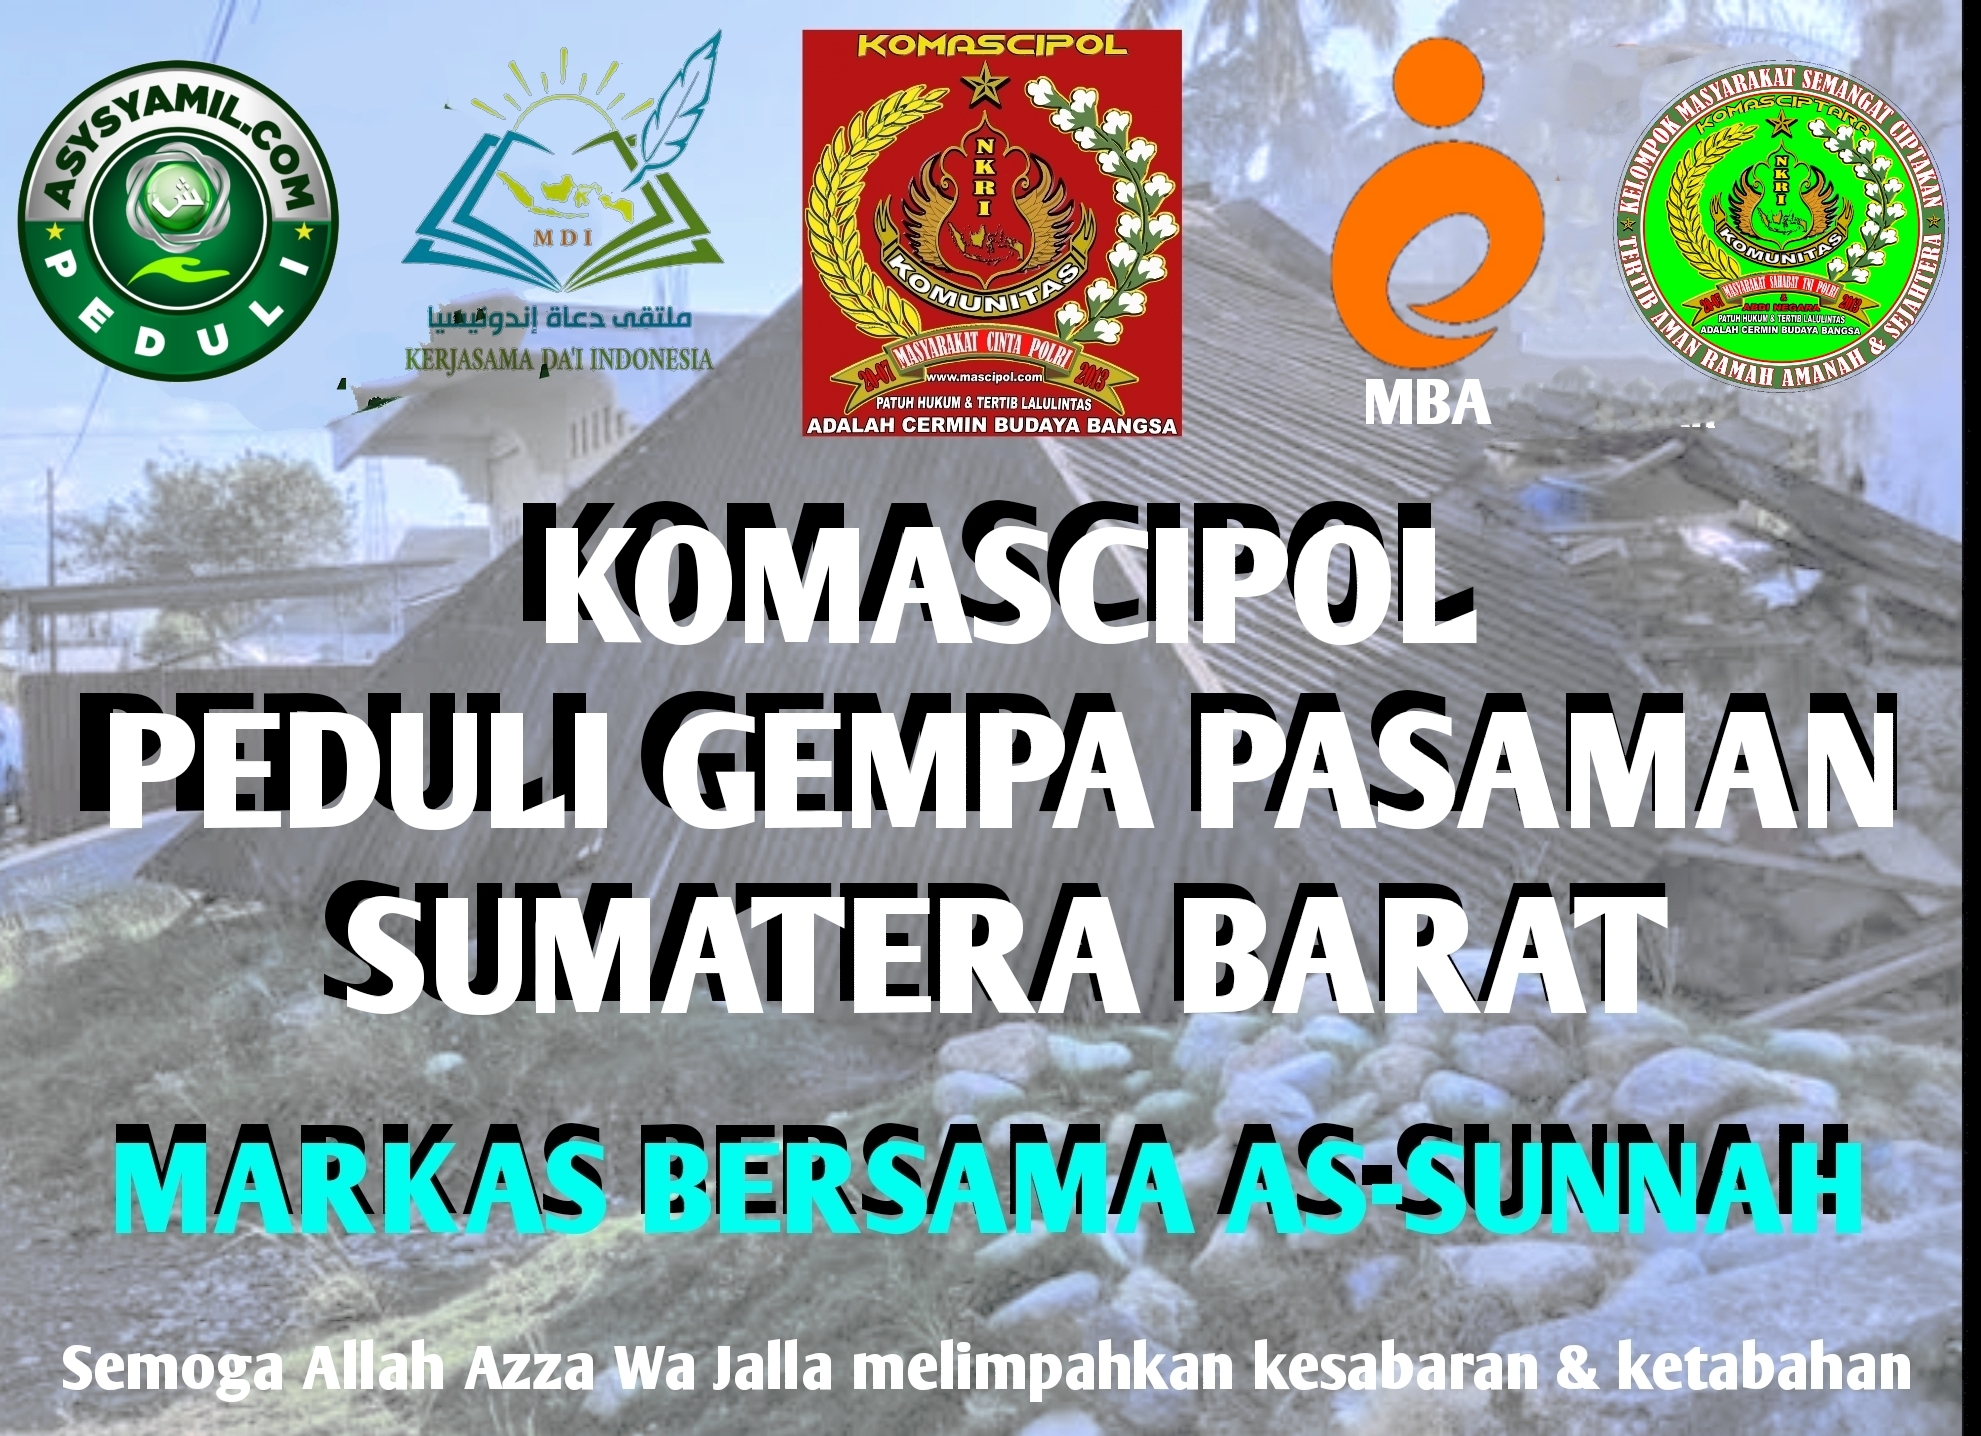 Ketua Harian Komascipol Pimpin dan Bergabung Dengan Relawan Posko As Sunnah Guna Meringankan Beban Warga Korban Gempa Sumatra Barat